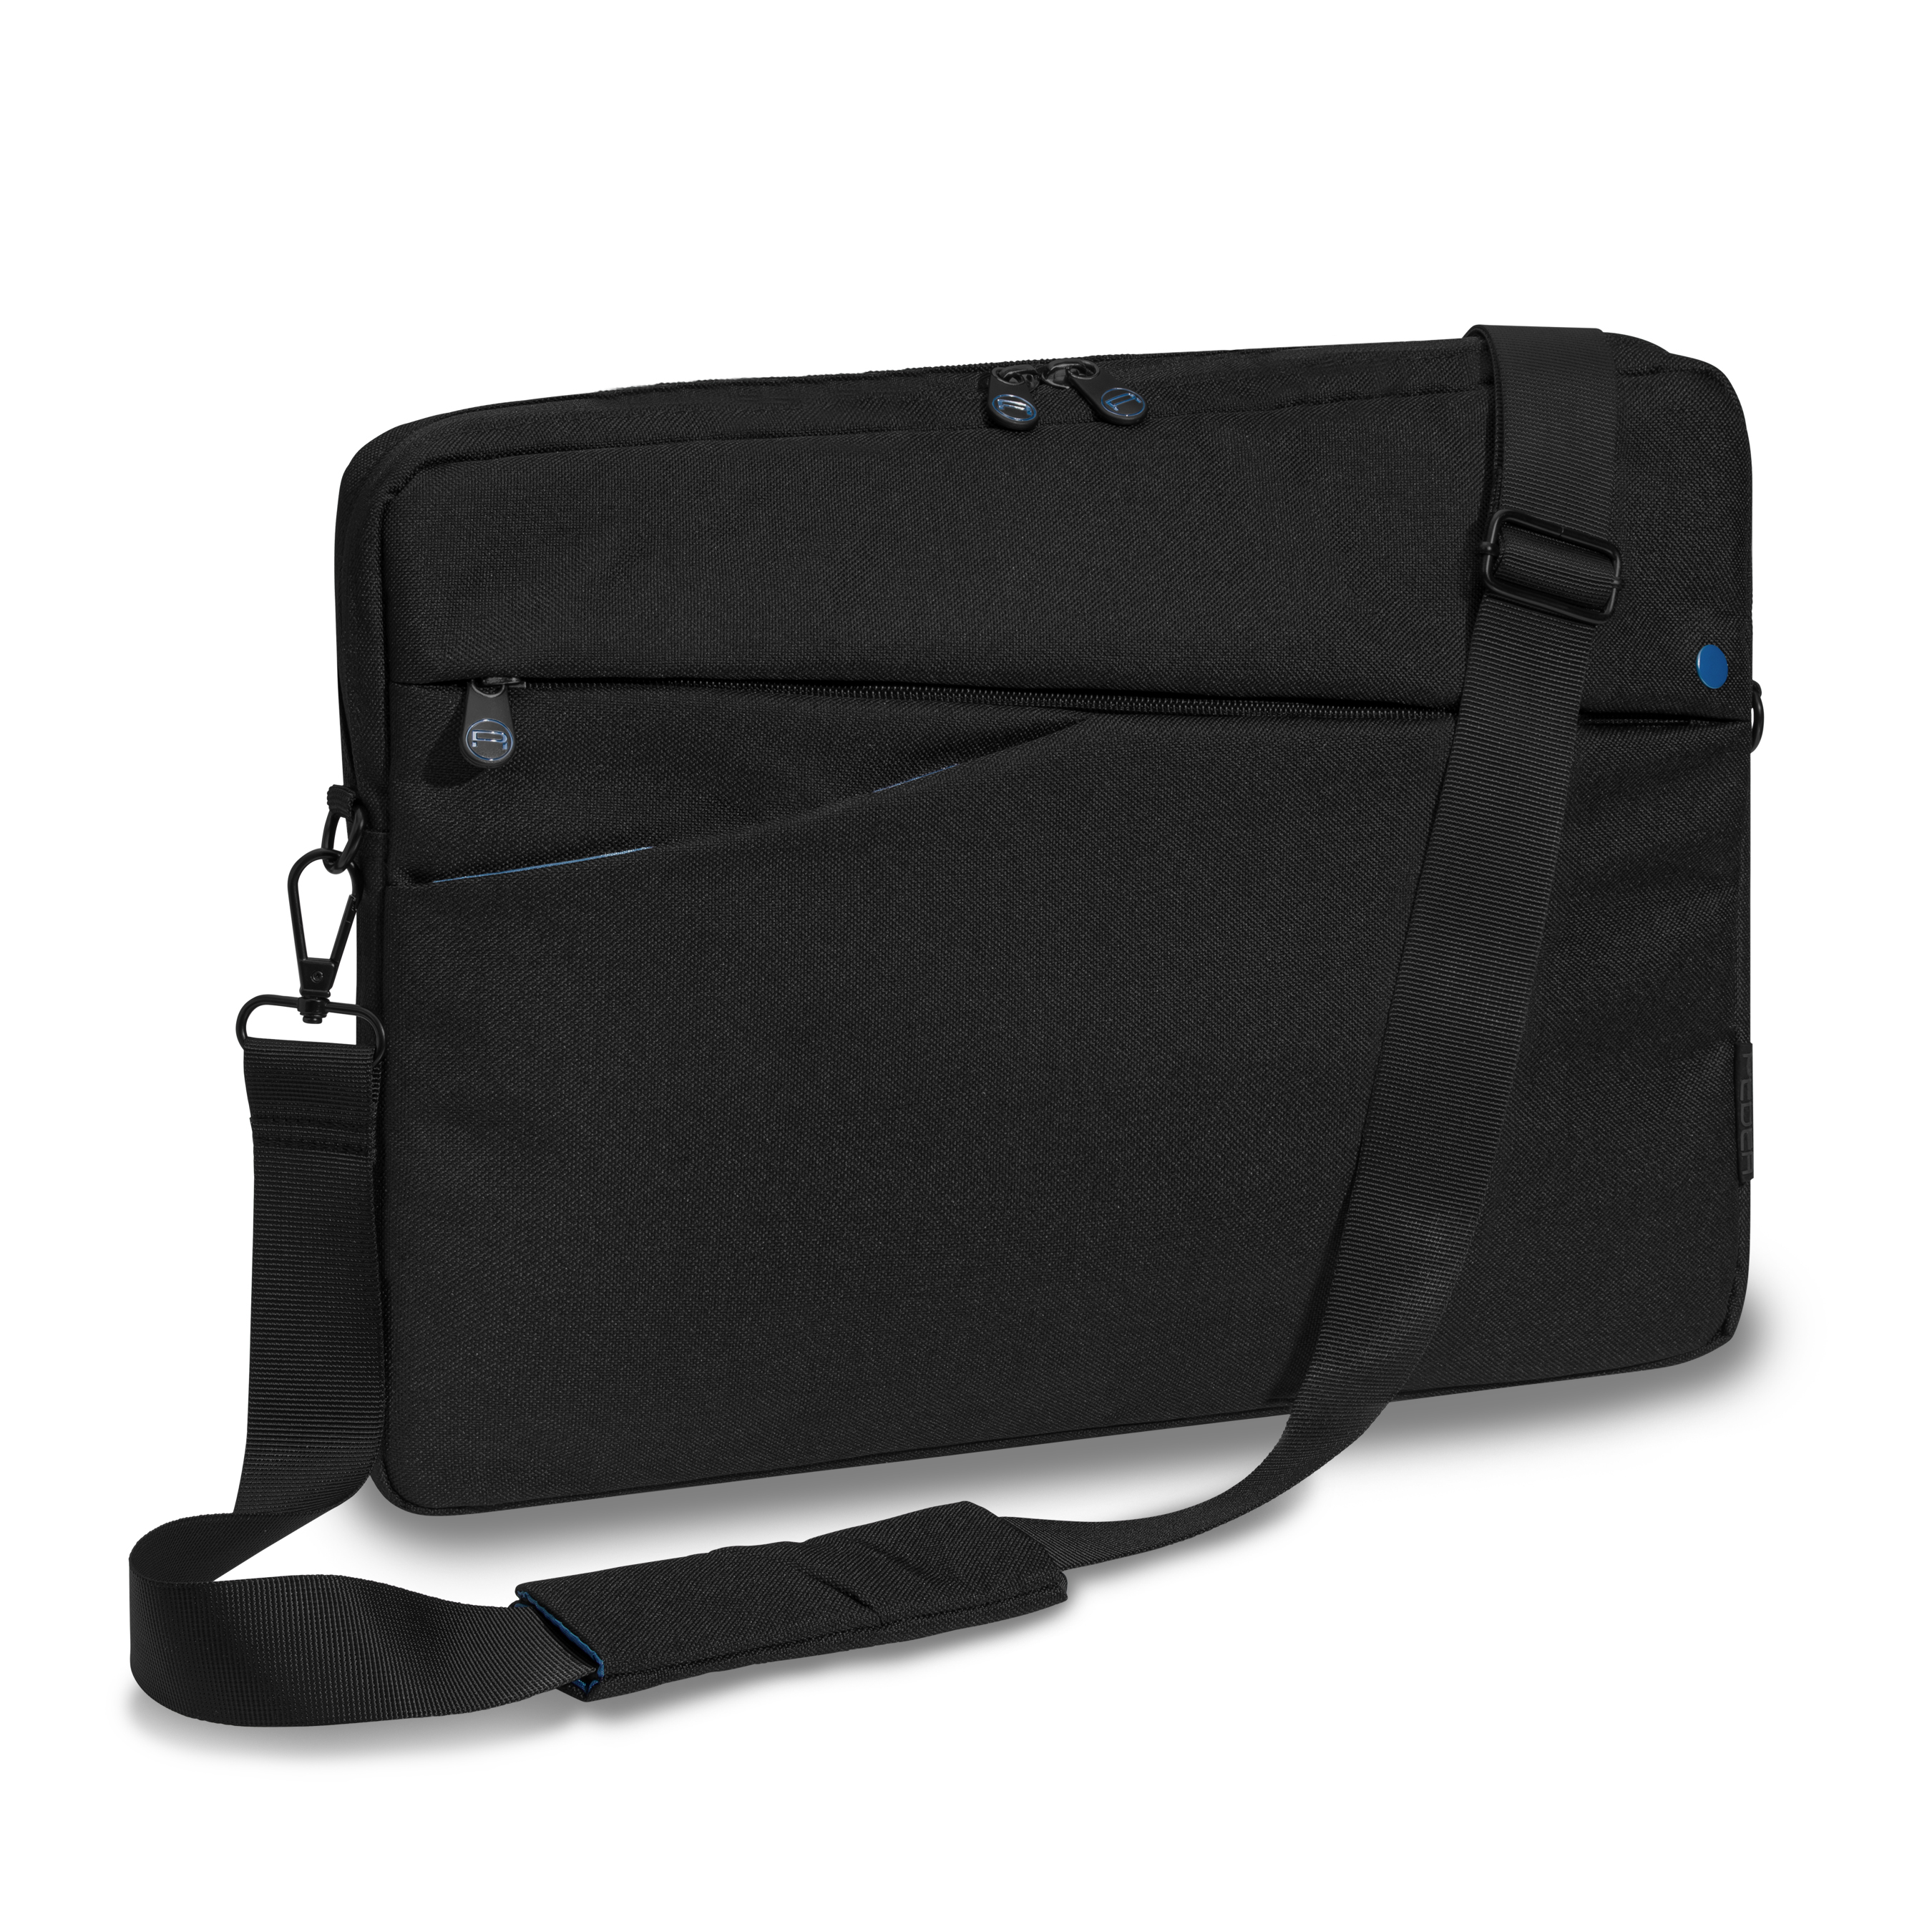 PEDEA Laptoptasche 13,3 Zoll (33,8cm) FASHION Notebook Umhängetasche mit  Schultergurt, schwarz-blau | bis 13,3 Zoll |Laptop-Taschen |Laptop-Zubehör |